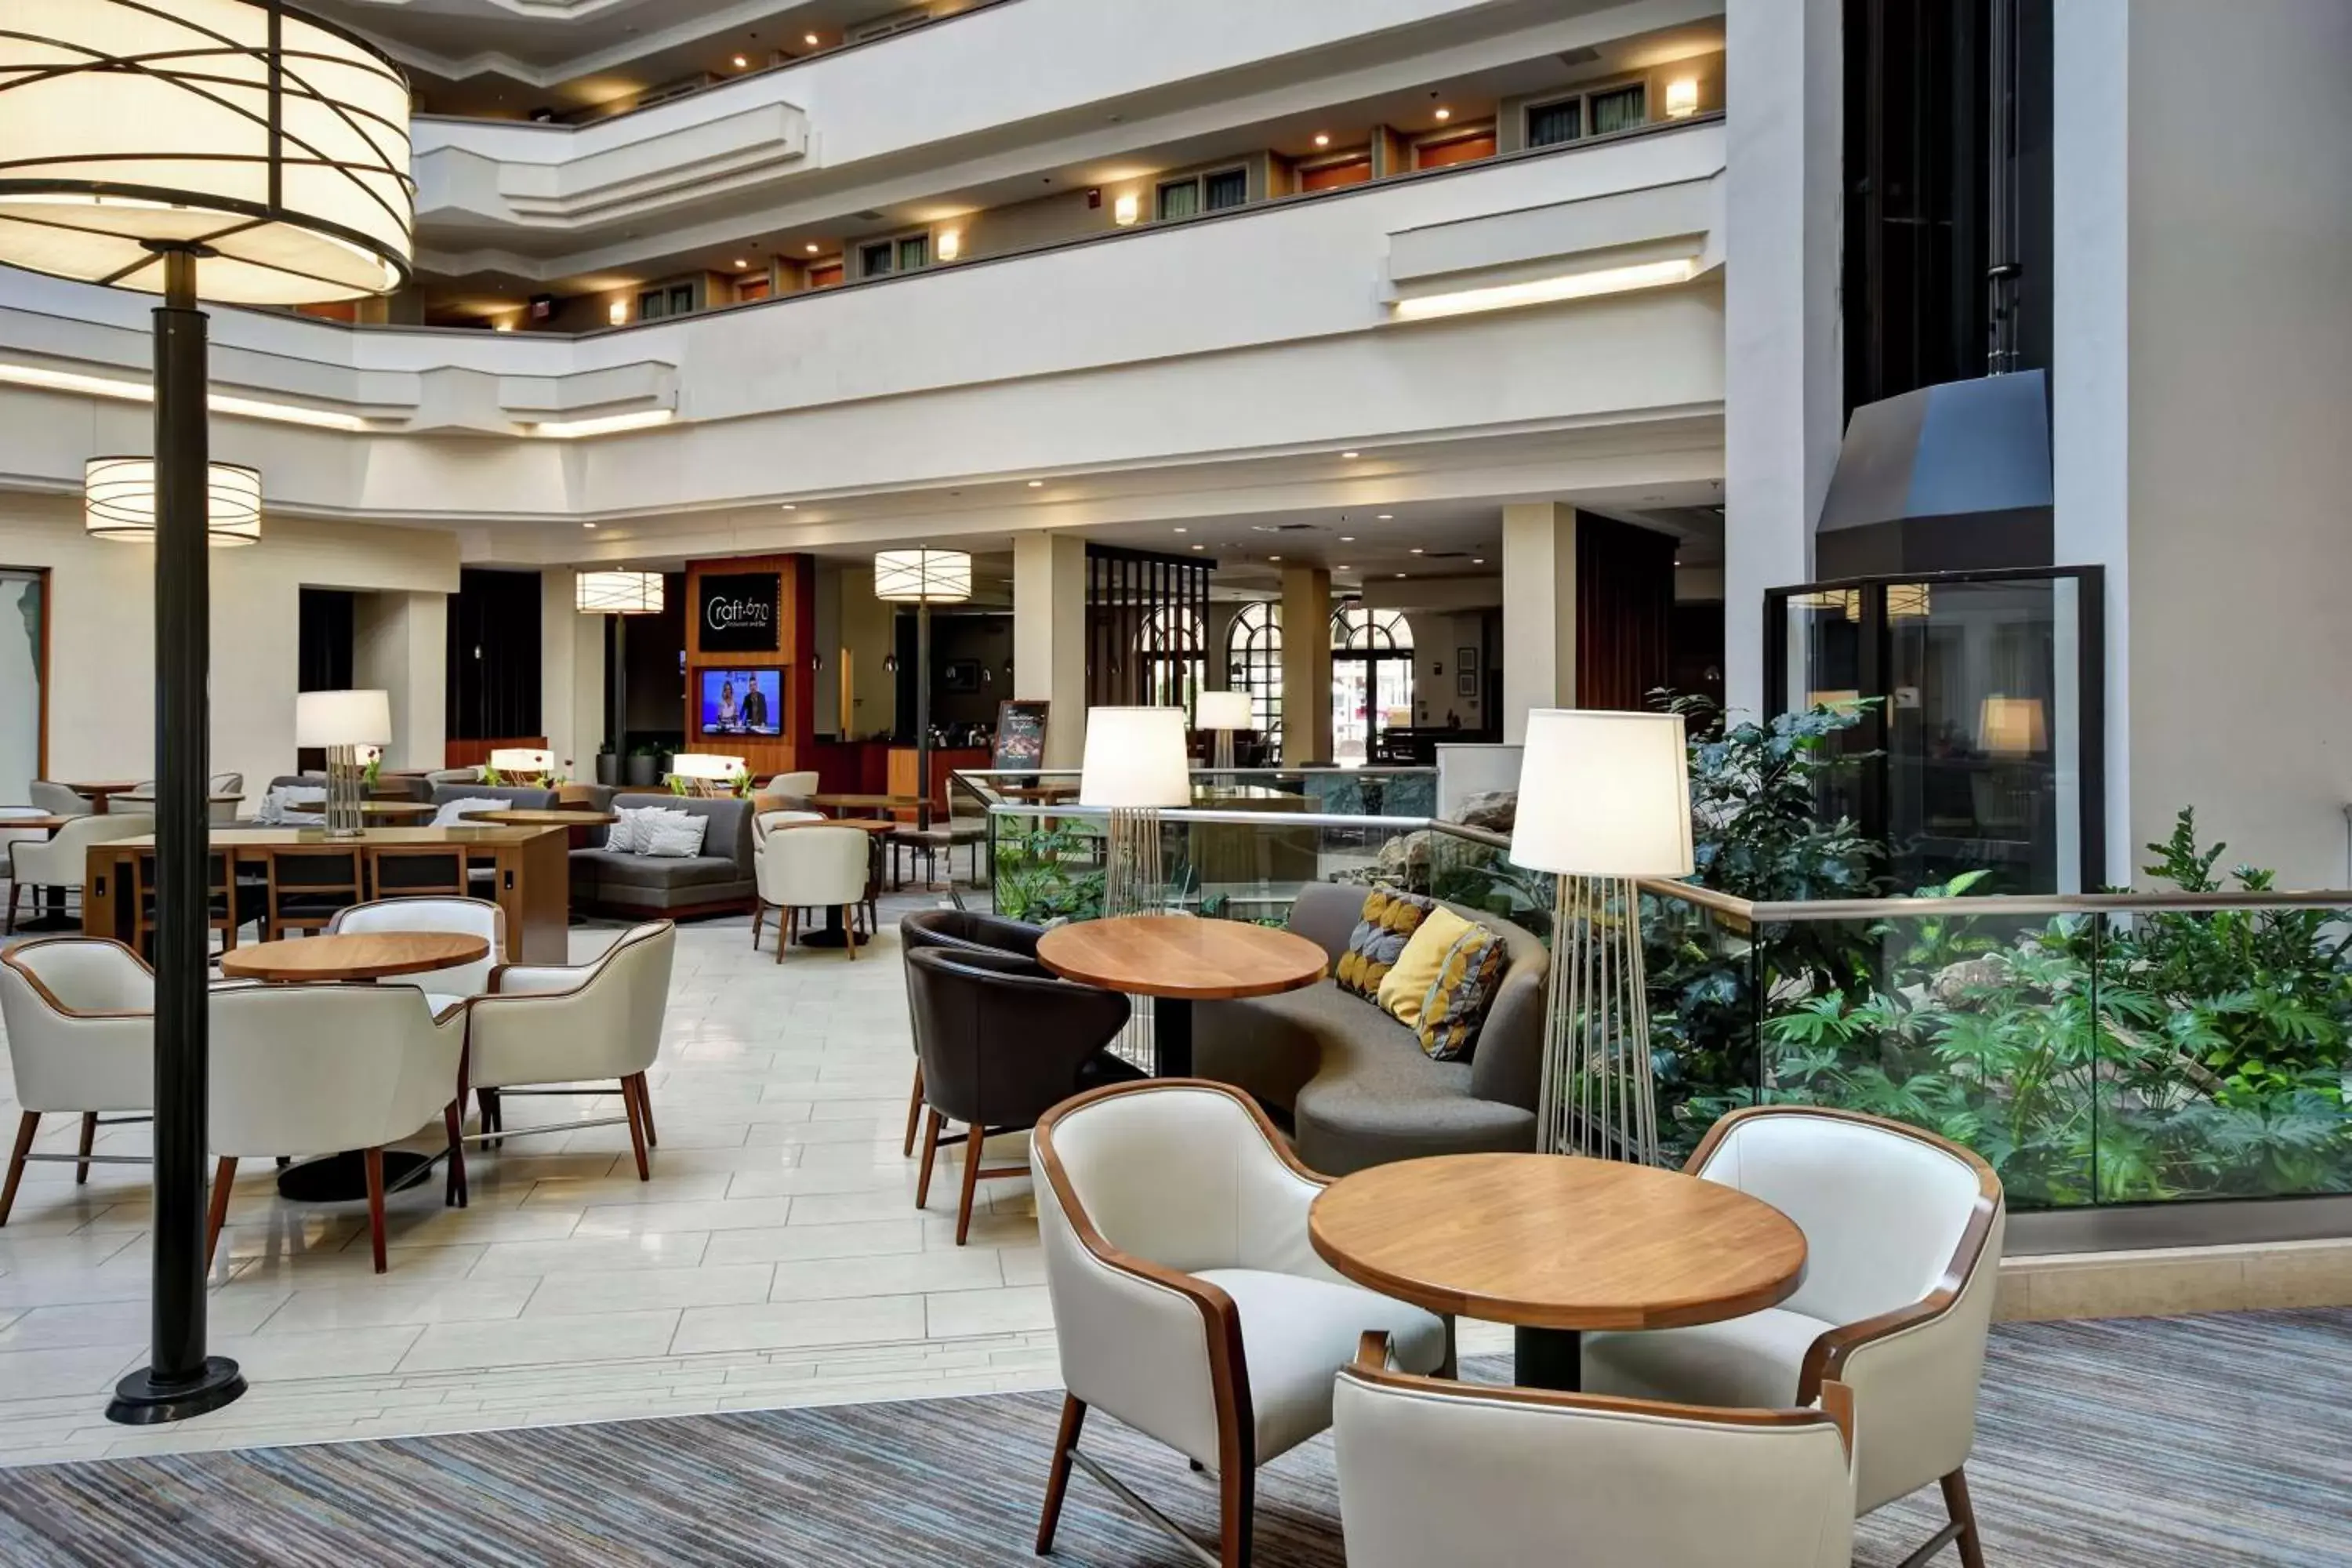 Bedroom, Lounge/Bar in Embassy Suites Greenville Golf Resort & Conference Center